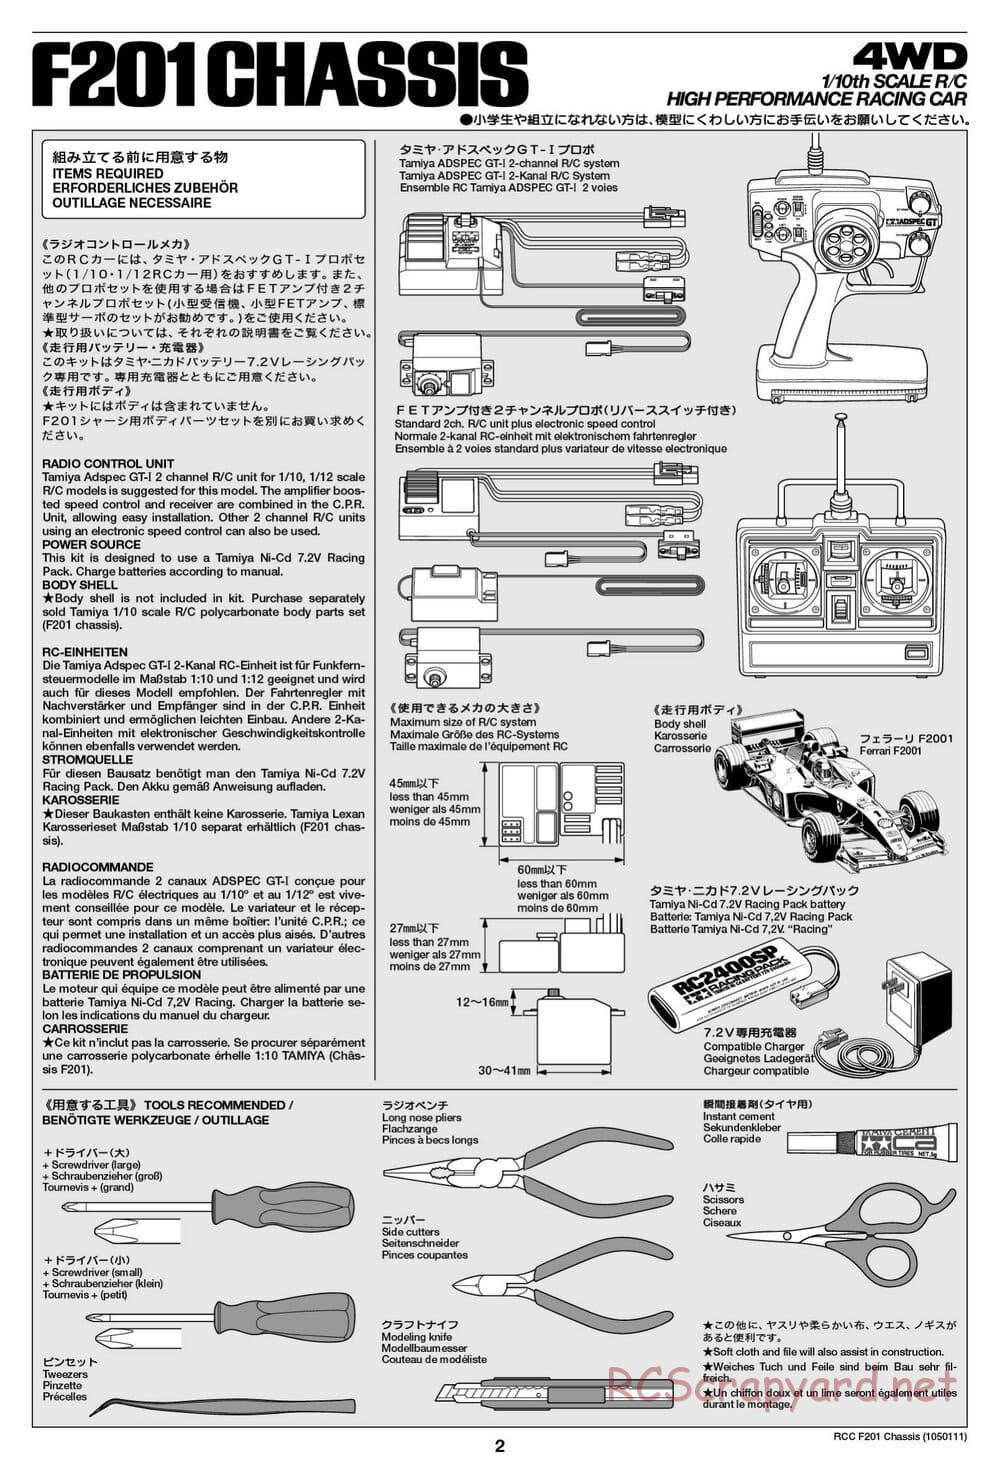 Tamiya - F201 Chassis - Manual - Page 2